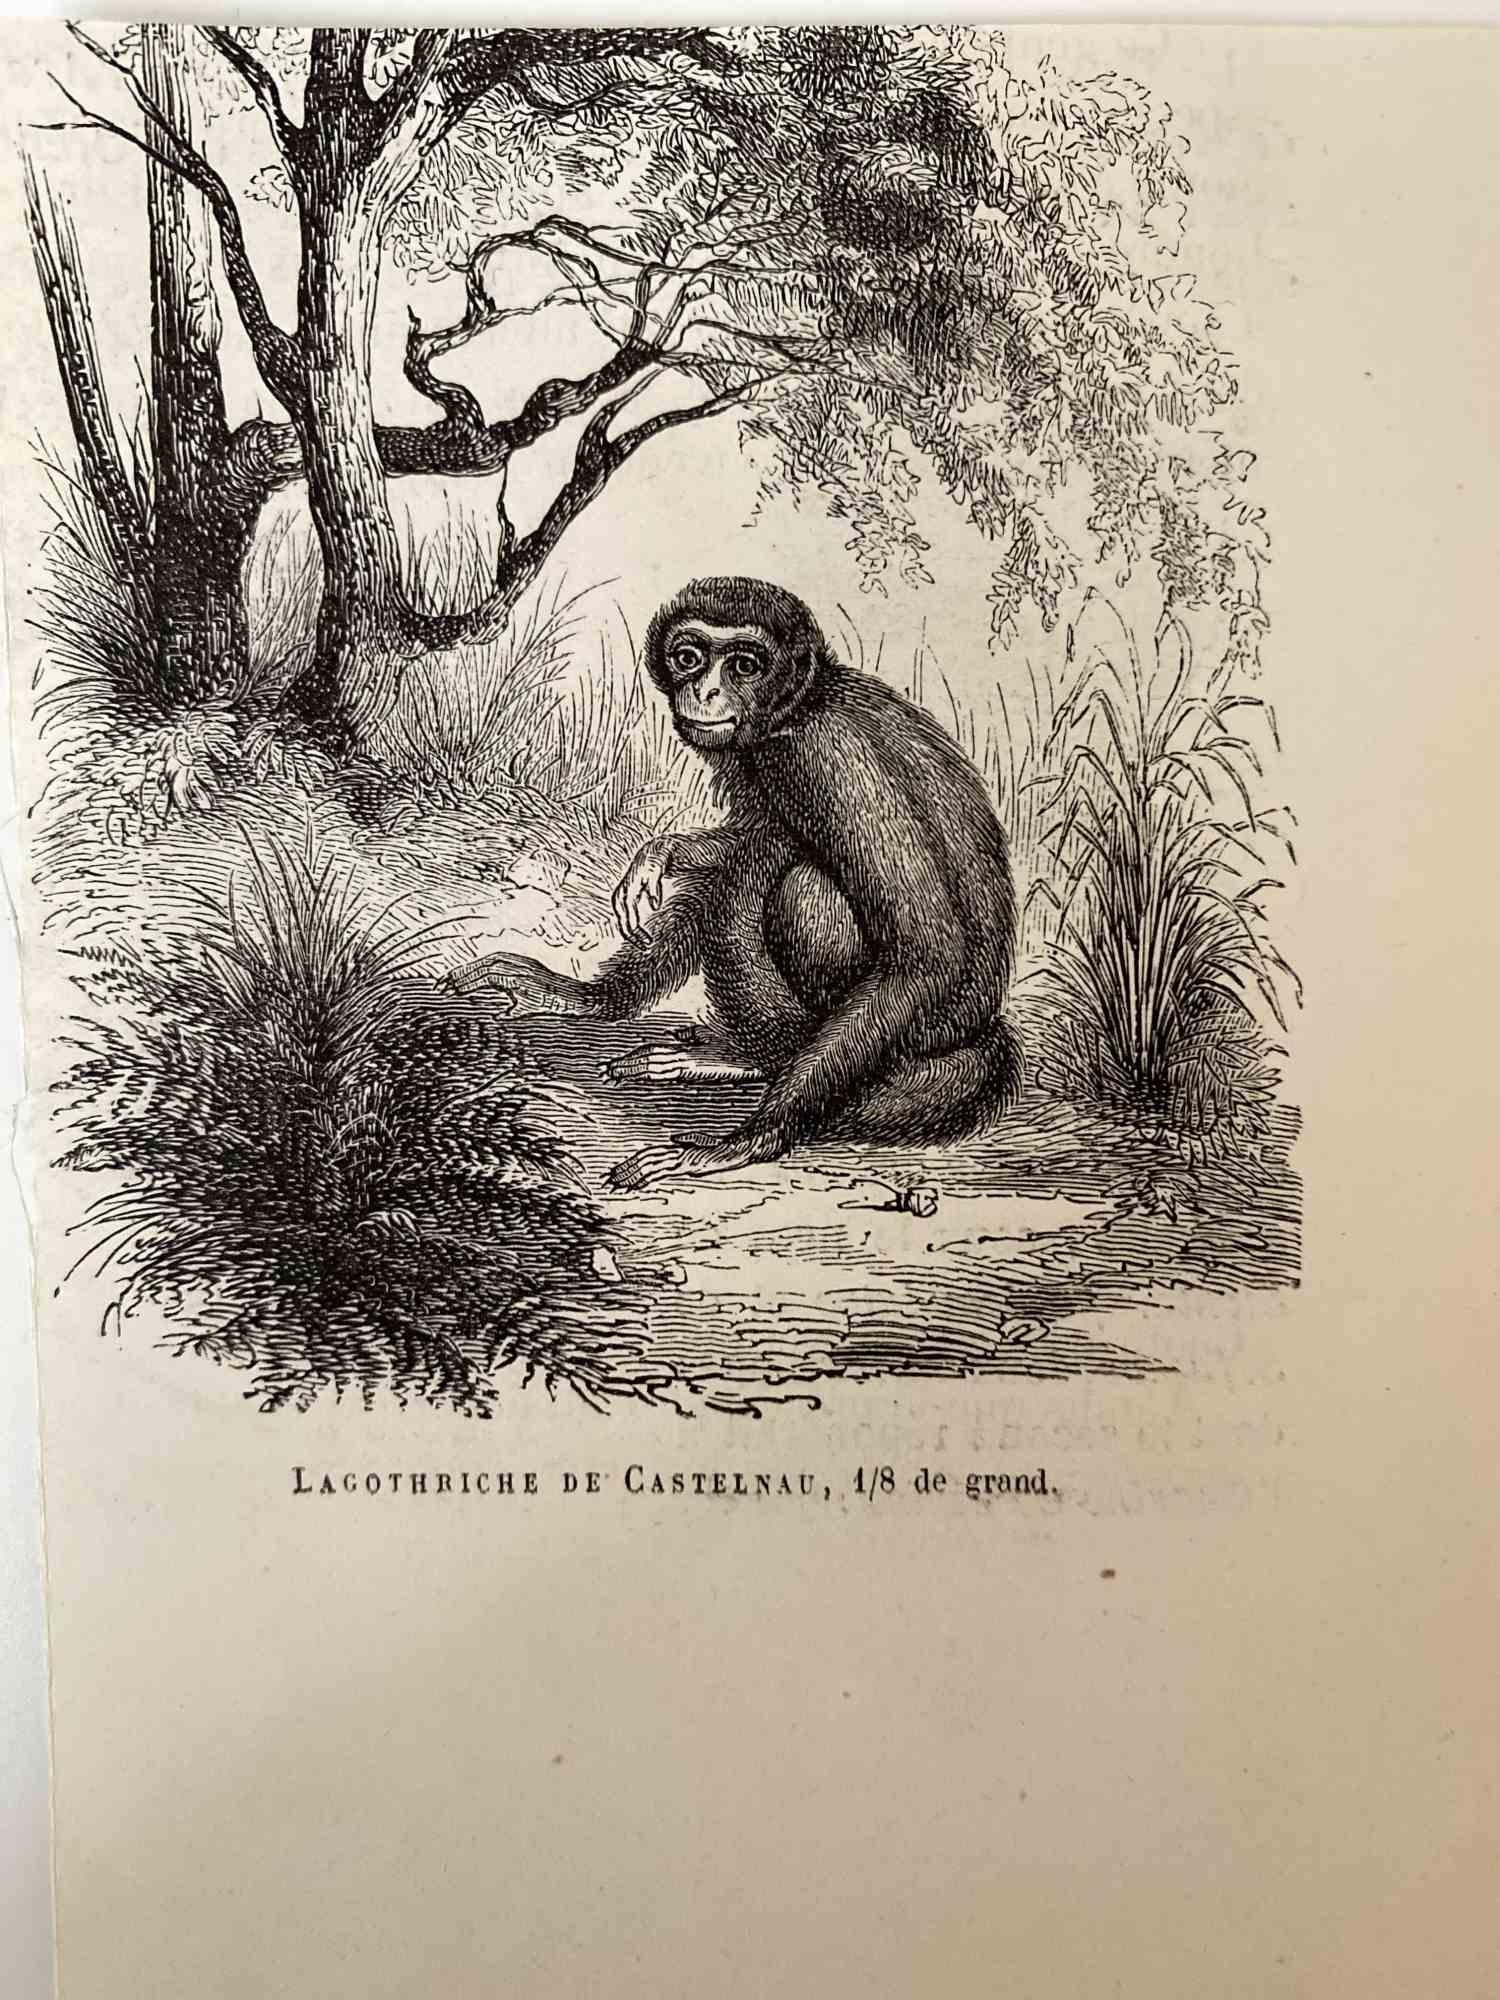 Le Singe est une lithographie originale sur papier couleur ivoire, réalisée par Paul Gervais (1816-1879). L'œuvre est tirée de la série "Les Trois Règnes de la Nature", et a été publiée en 1854.

Bonnes conditions.

Titré sur le bas. Avec les notes